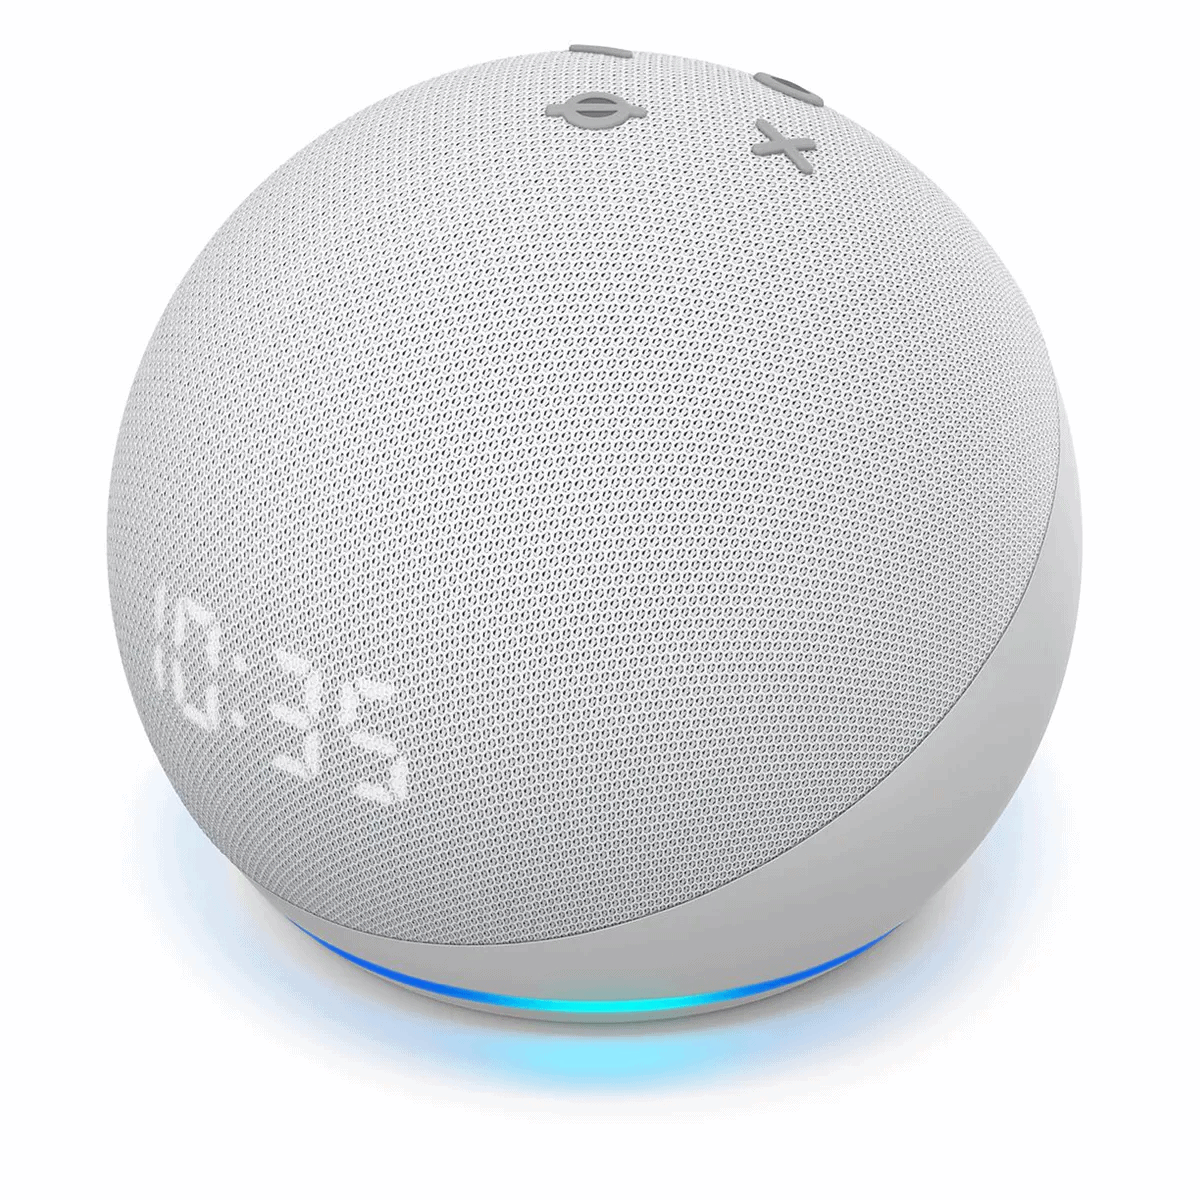 Alexa-Enabled Smart Speaker